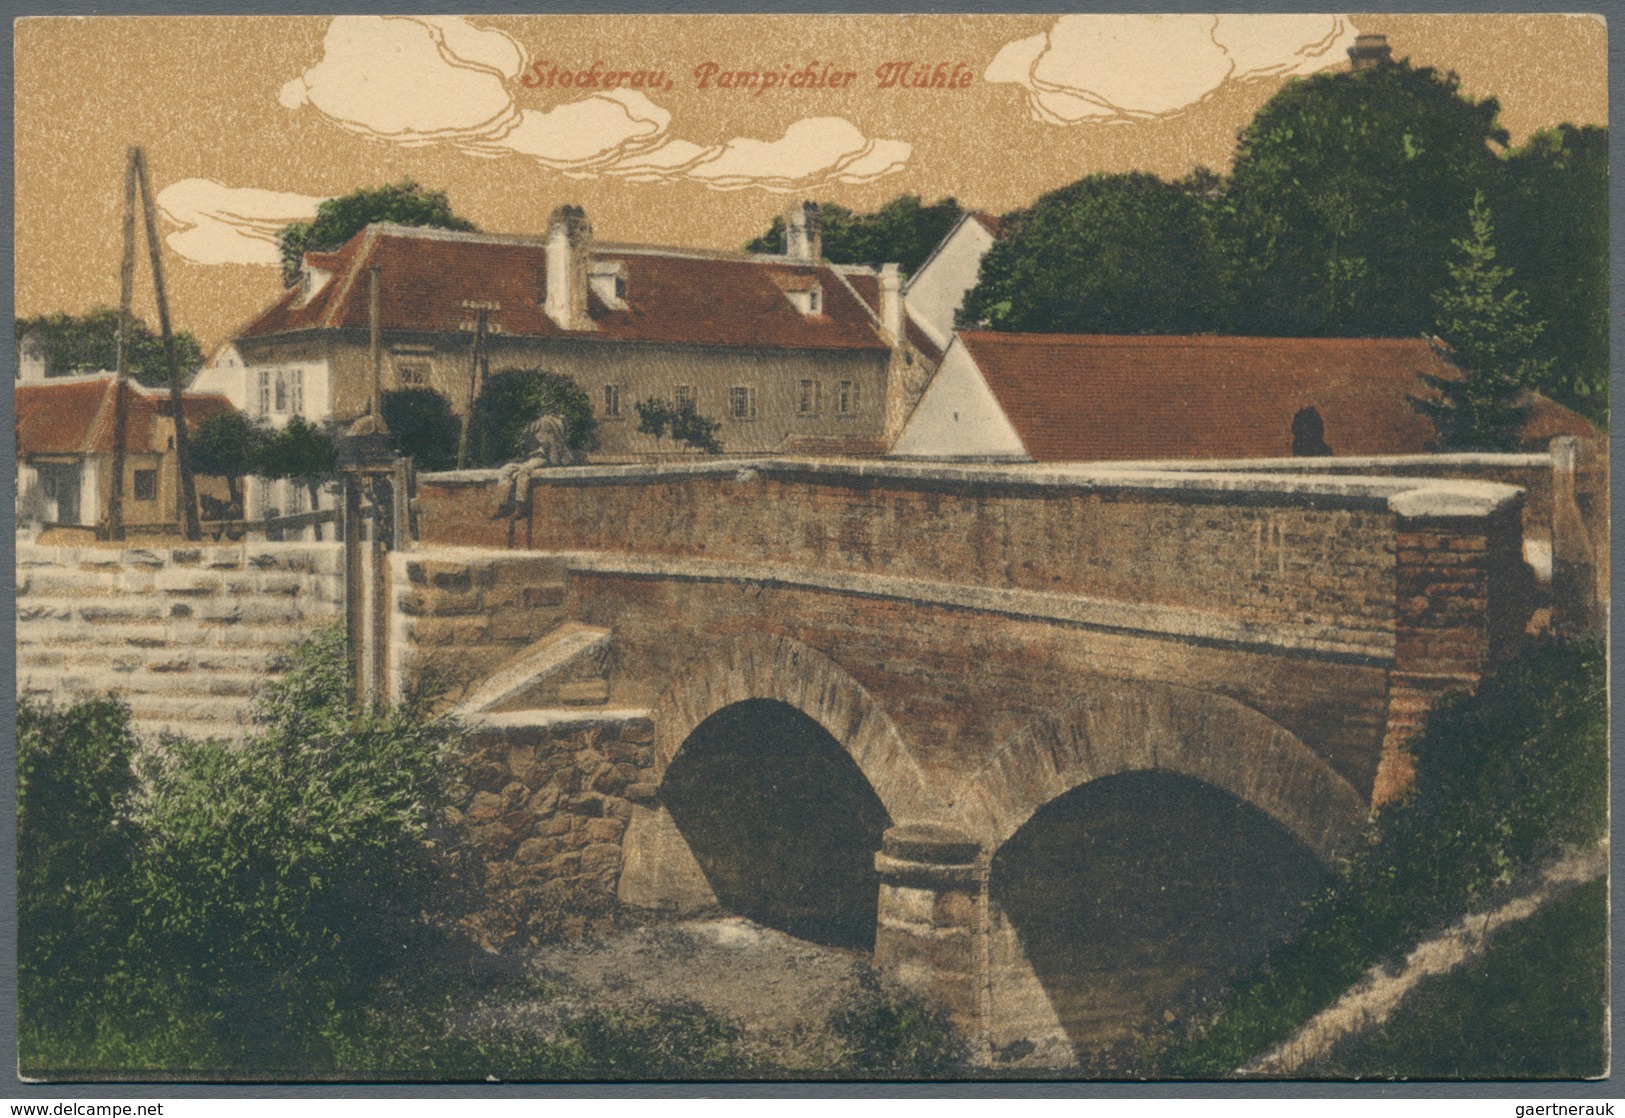 Ansichtskarten: Österreich: 1900 - 1960 (ca.), Posten von über 160 Ansichtskarten, viele gebraucht,